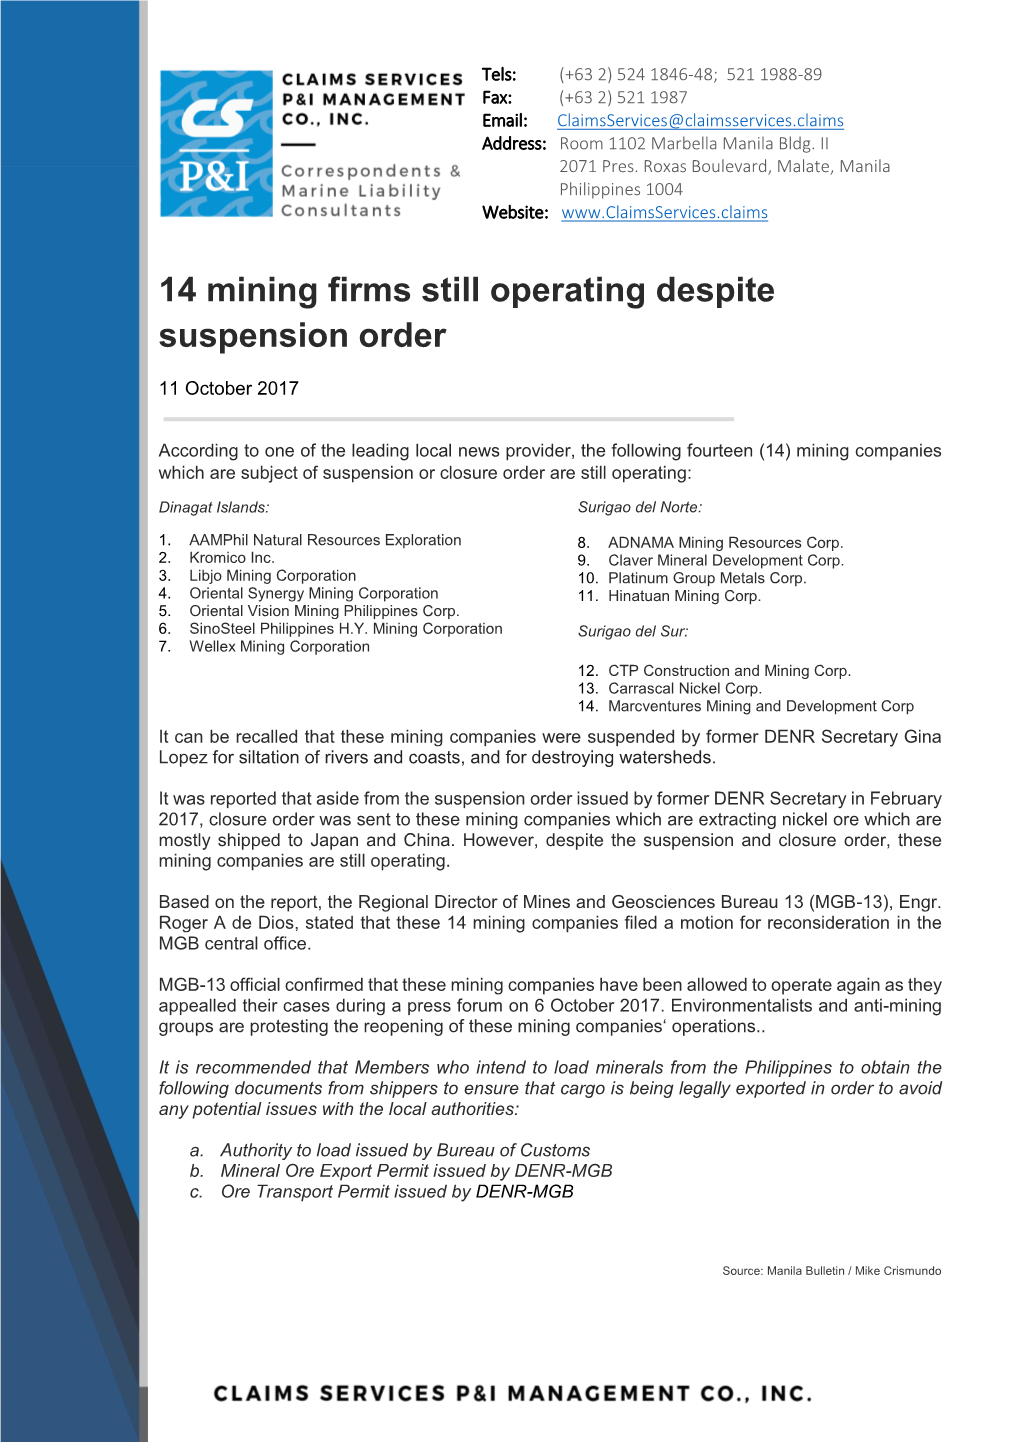 14 Mining Firms Still Operating Despite Suspension Order